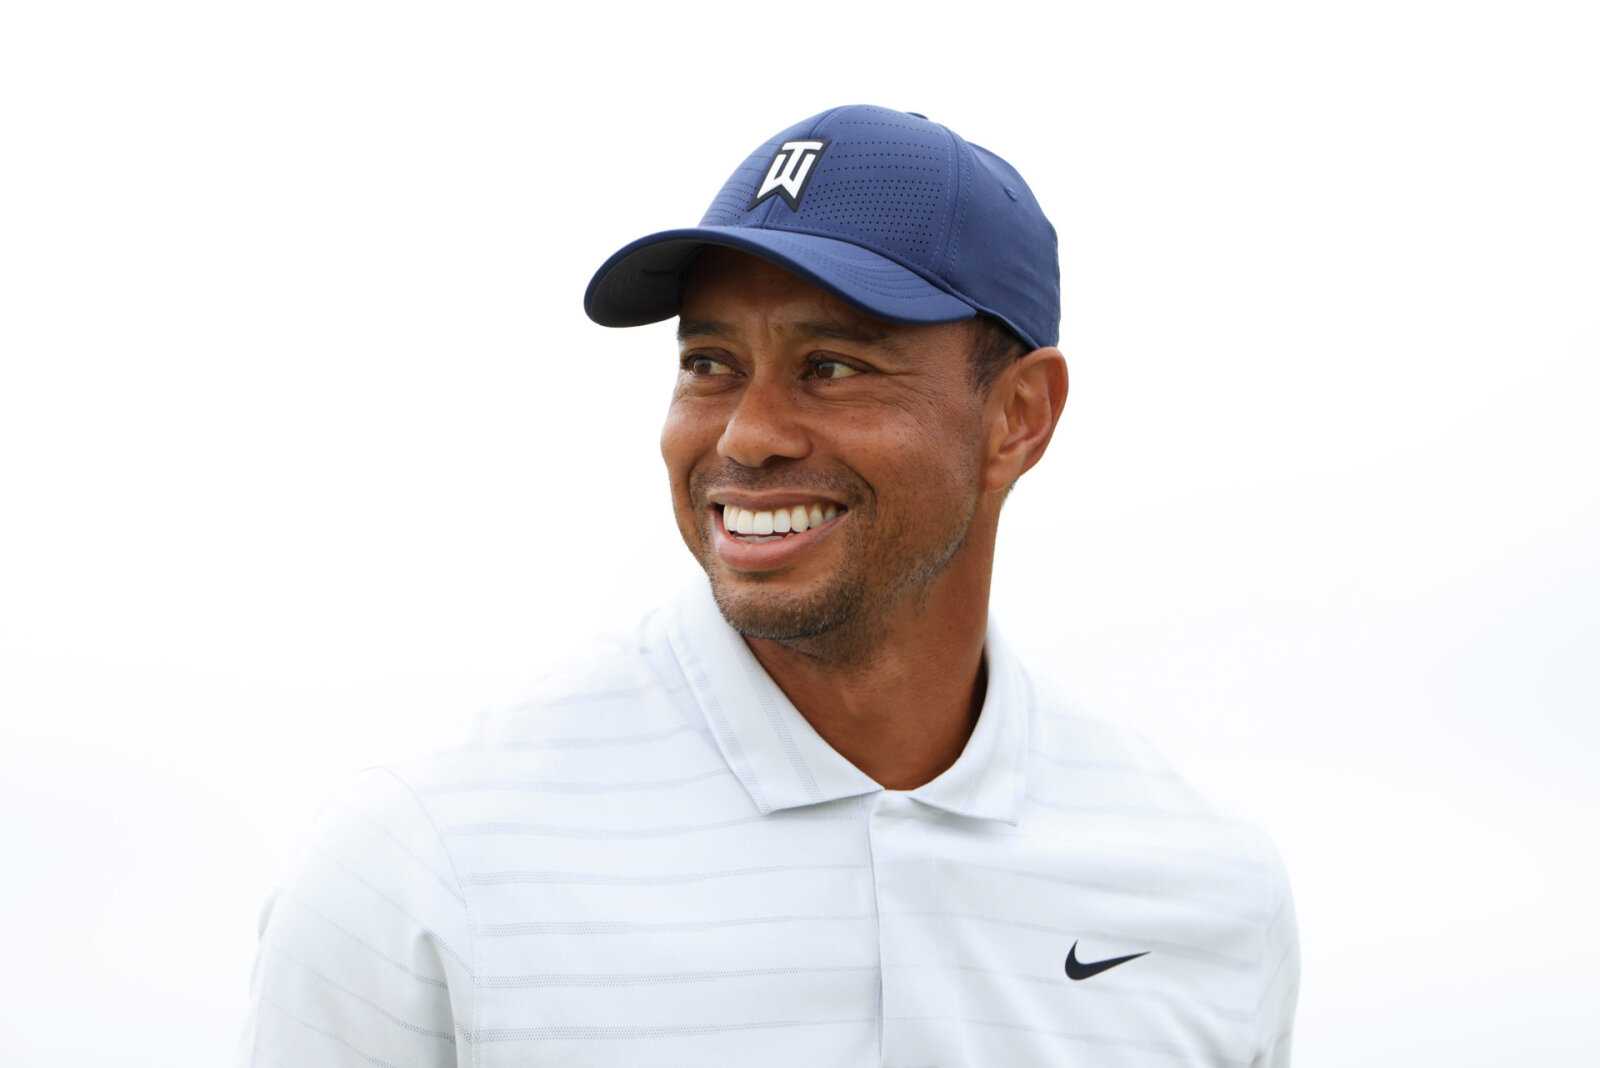 Tiger Woods marche-t-il encore?  Une vidéo récente suggère une amélioration drastique de la santé